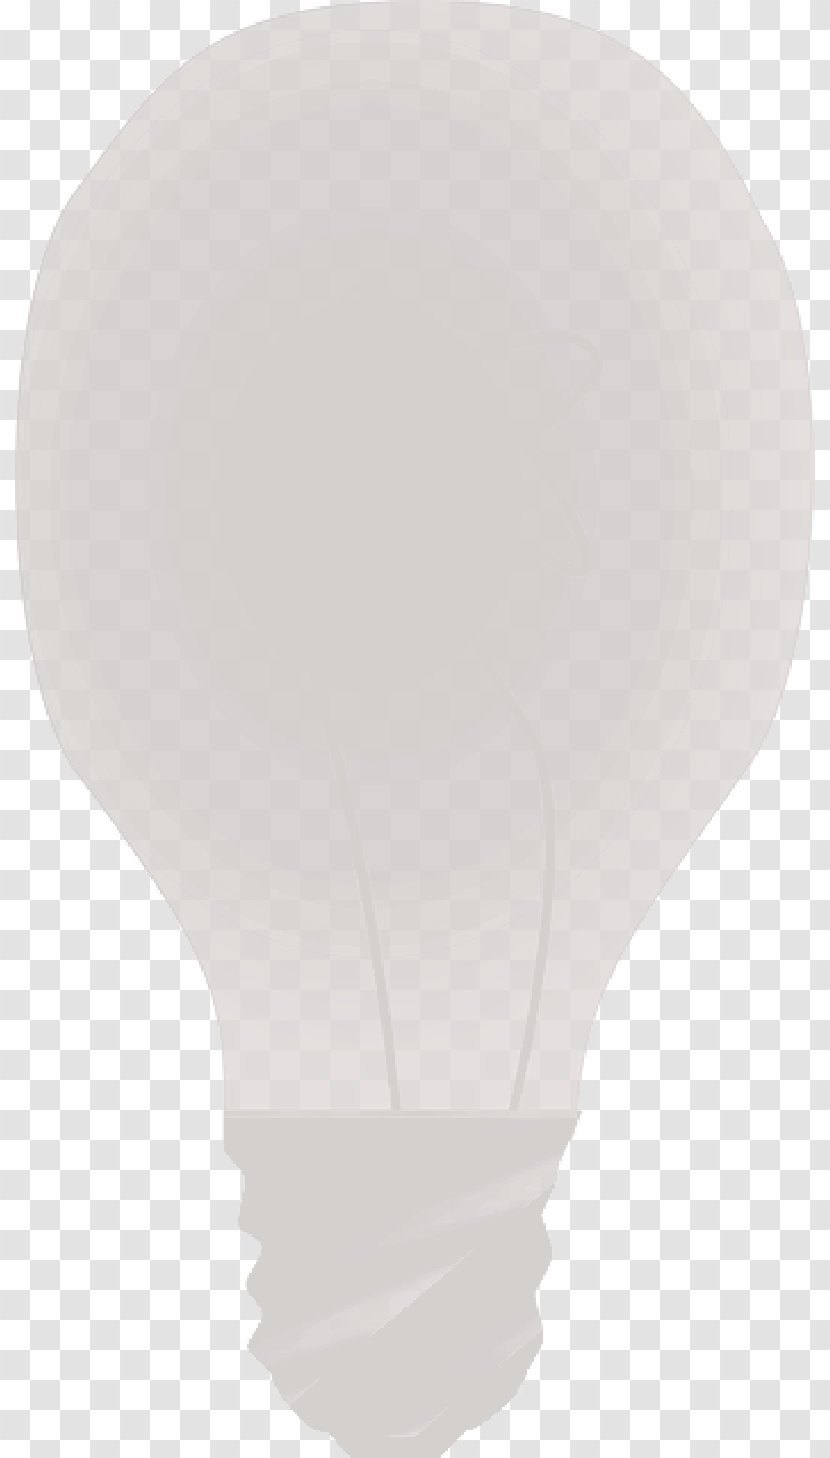 Product Design Lighting - Hot Air Balloon - Cartoon Lighthouse Transparent PNG